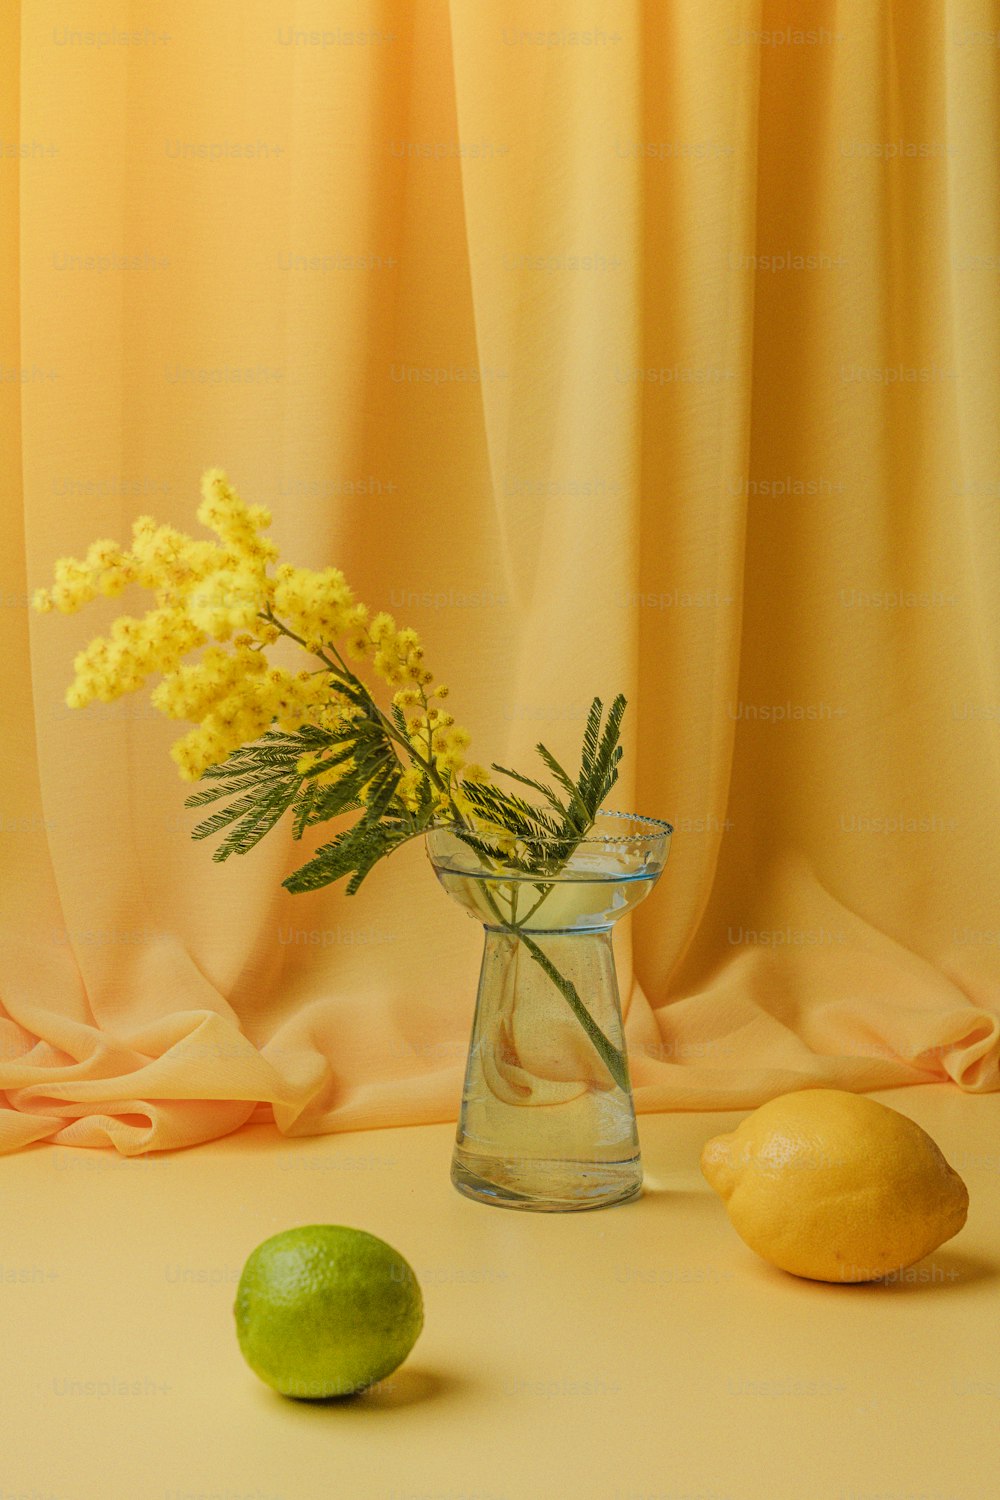 un vaso di vetro pieno di fiori gialli accanto ai limoni